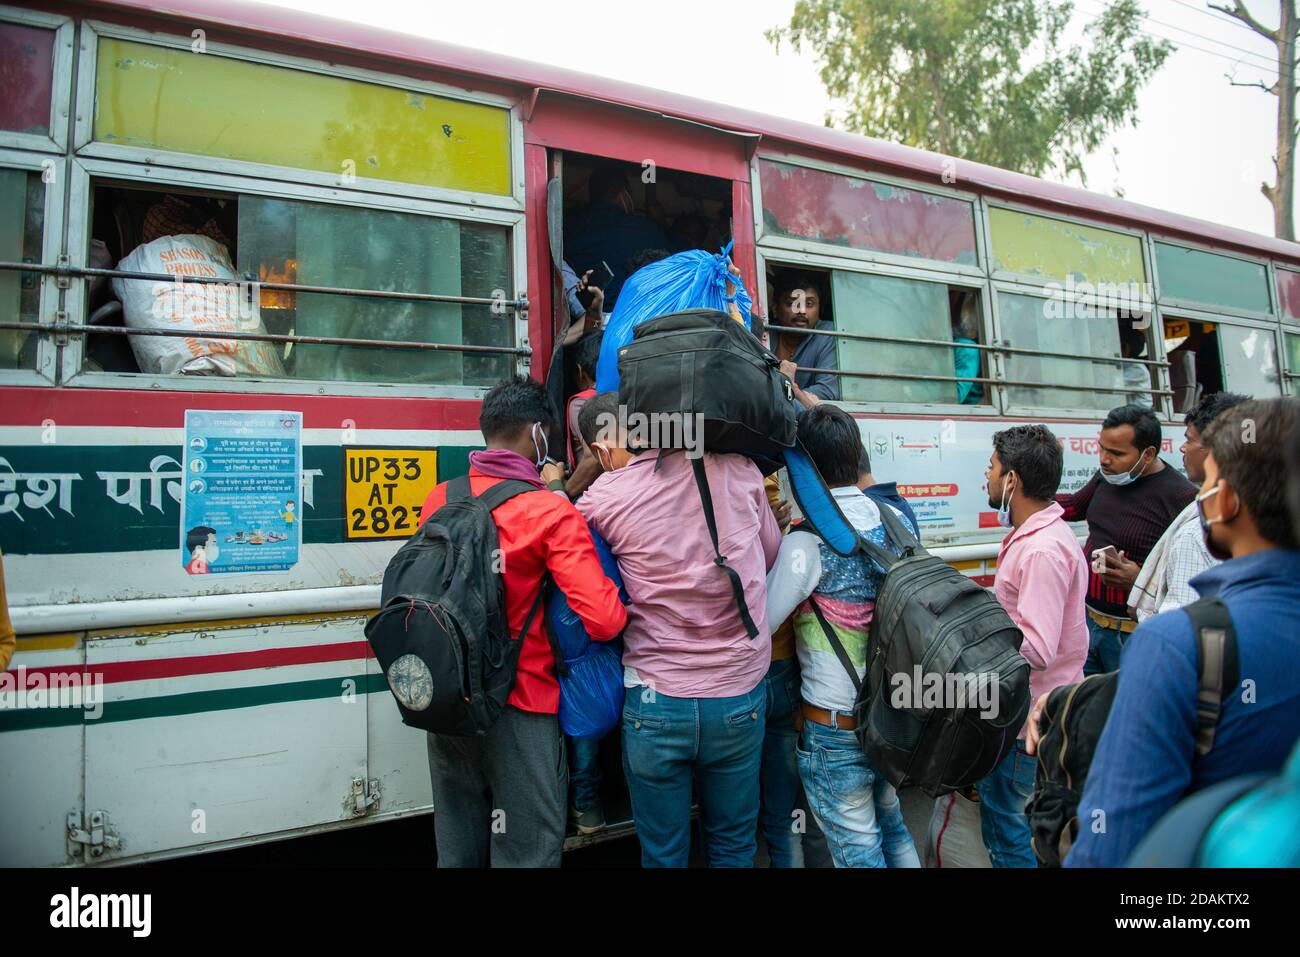 Les migrants embarquant dans un bus avant les célébrations de Diwali.UN festival majeur dans la religion hindoue, la plupart des gens veulent célébrer Diwali avec la famille pour qu'ils doivent rentrer chez eux. Actuellement, les trains ne sont pas entièrement opérationnels et les gens voyagent en bus. Banque D'Images